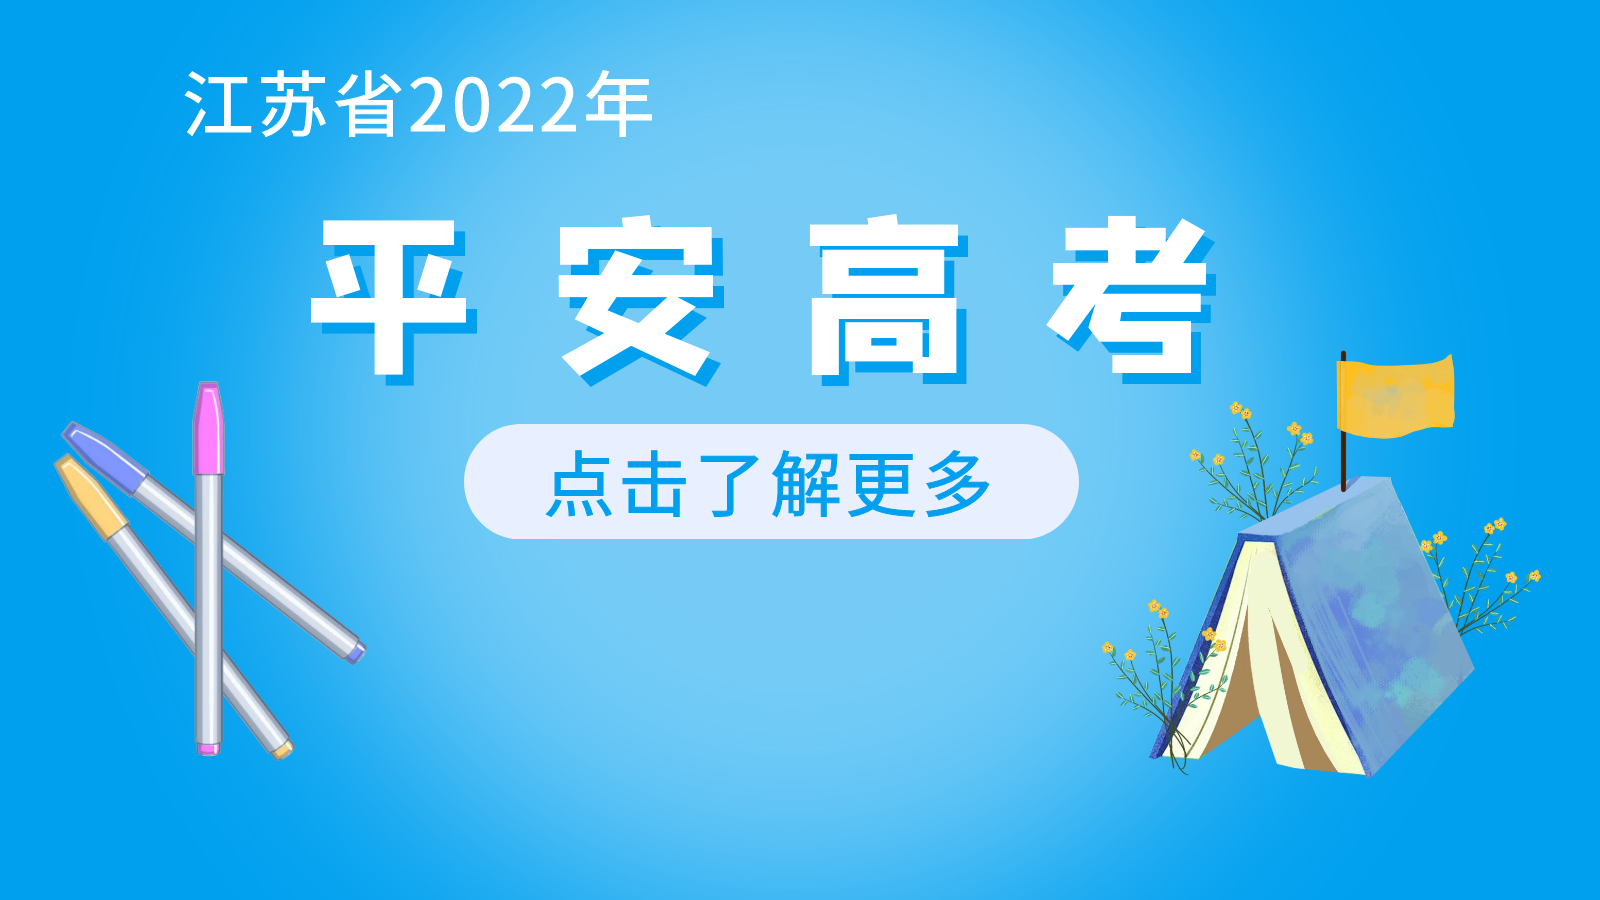  2022年beplay体育官方网“平安高考”专栏